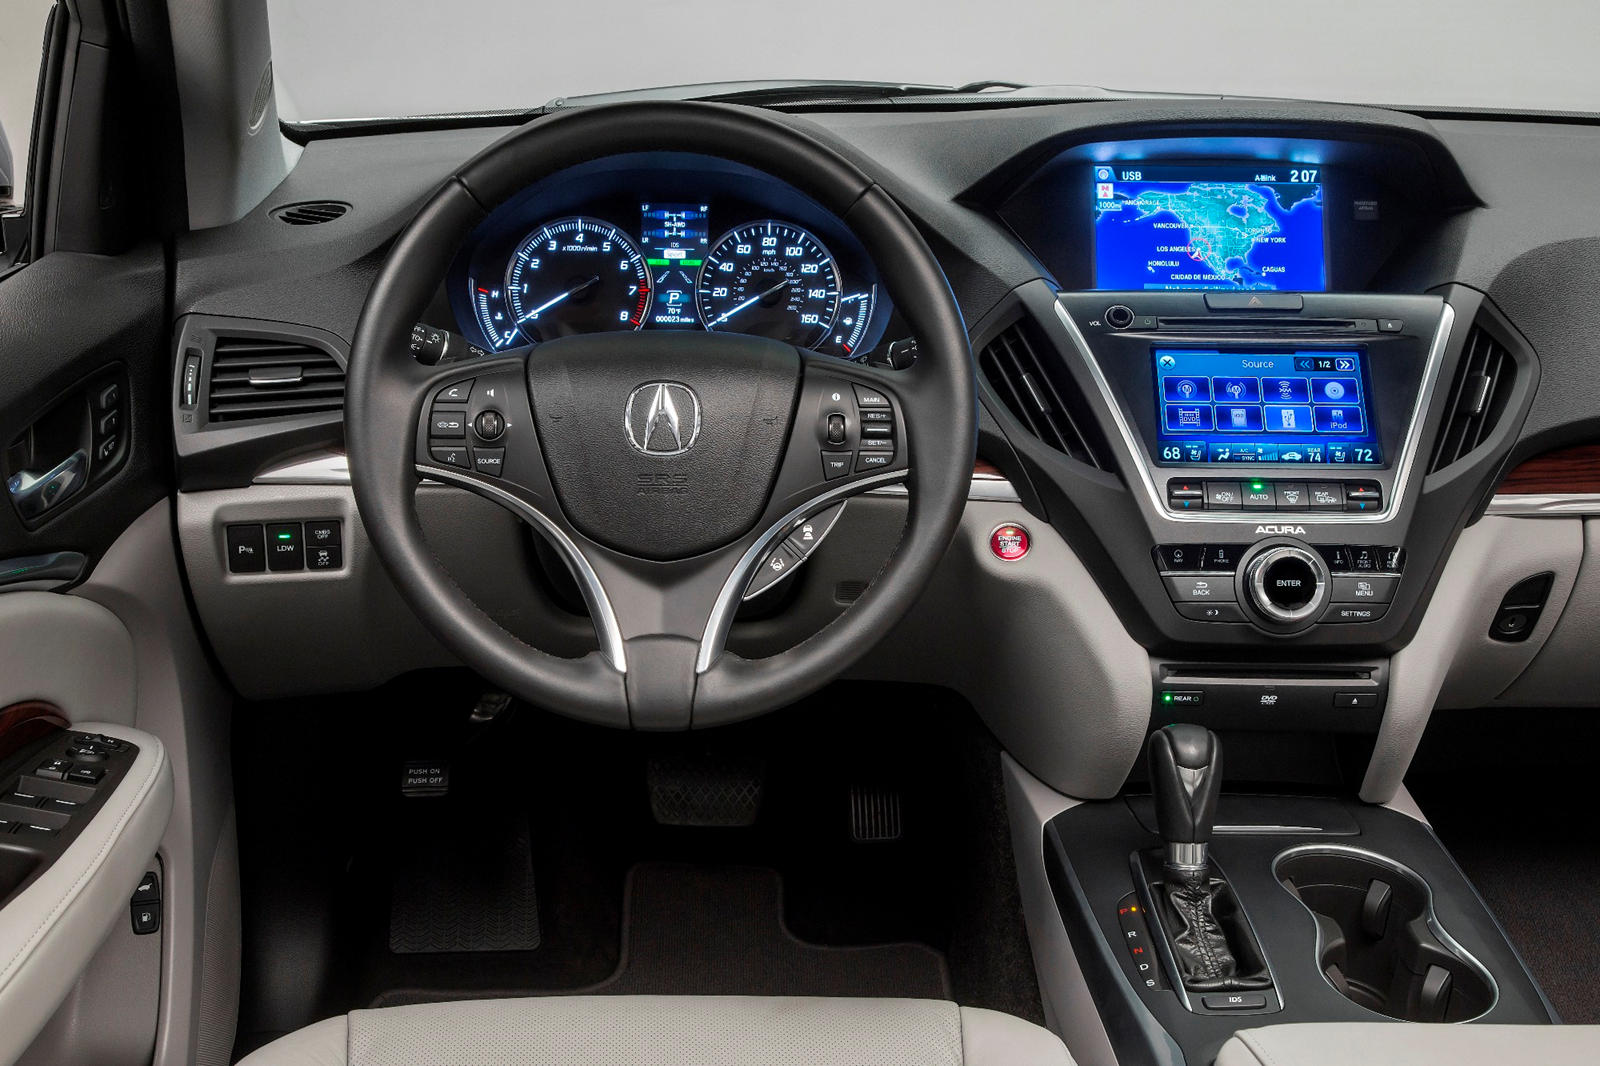 2014 Acura MDX Interior Photos | CarBuzz